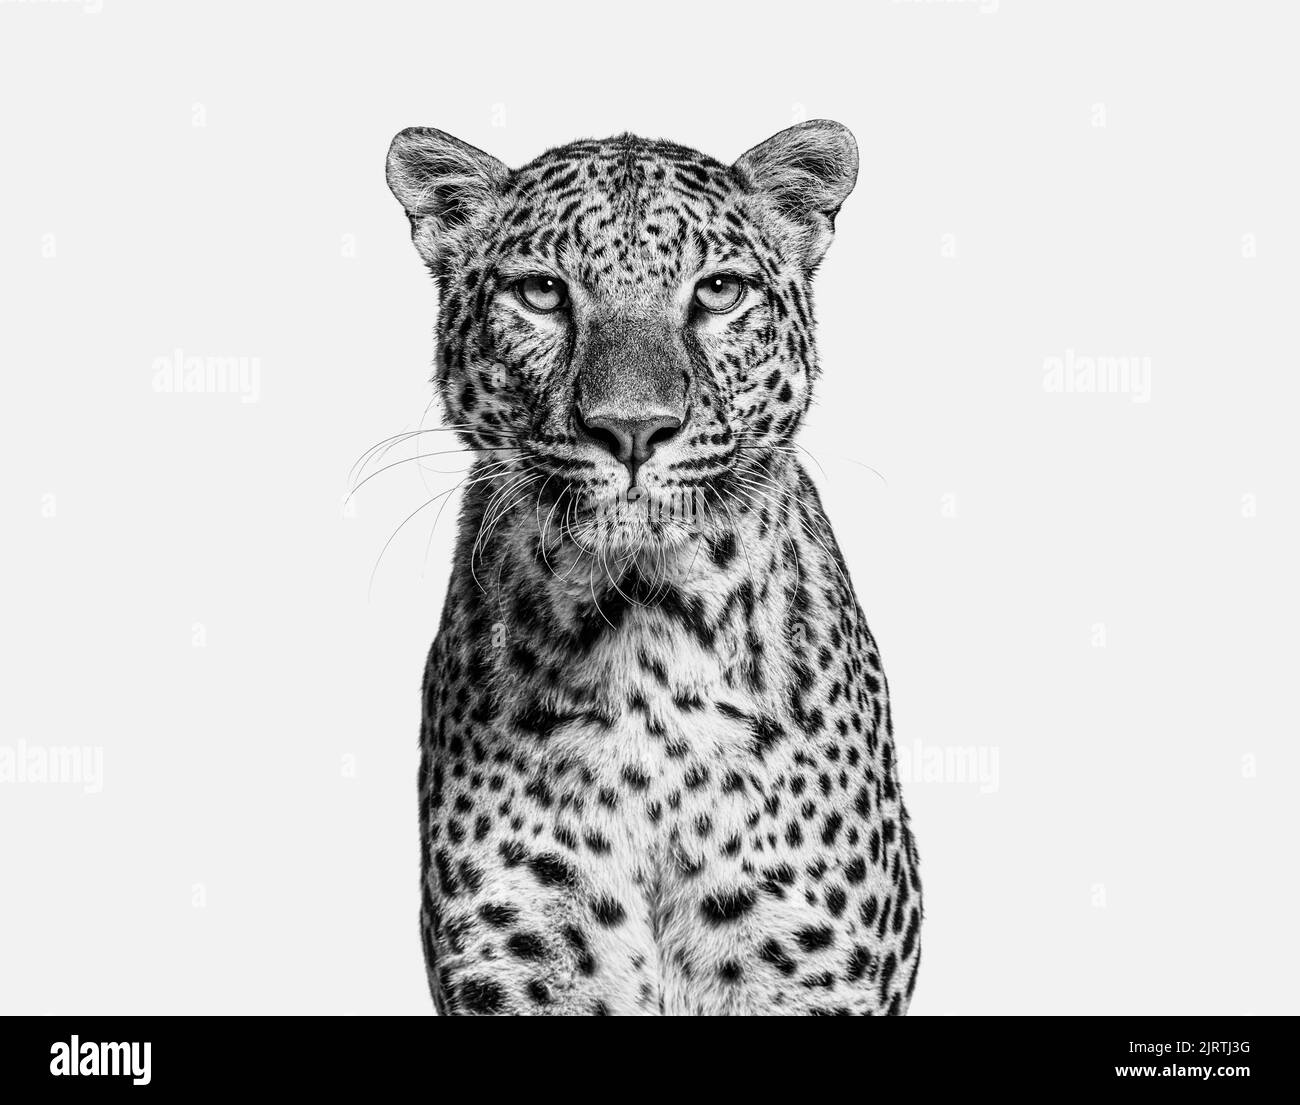 Bianco e nero Head shot, ritratto di un leopardo puntato rivolto verso la fotocamera, isolato Foto Stock